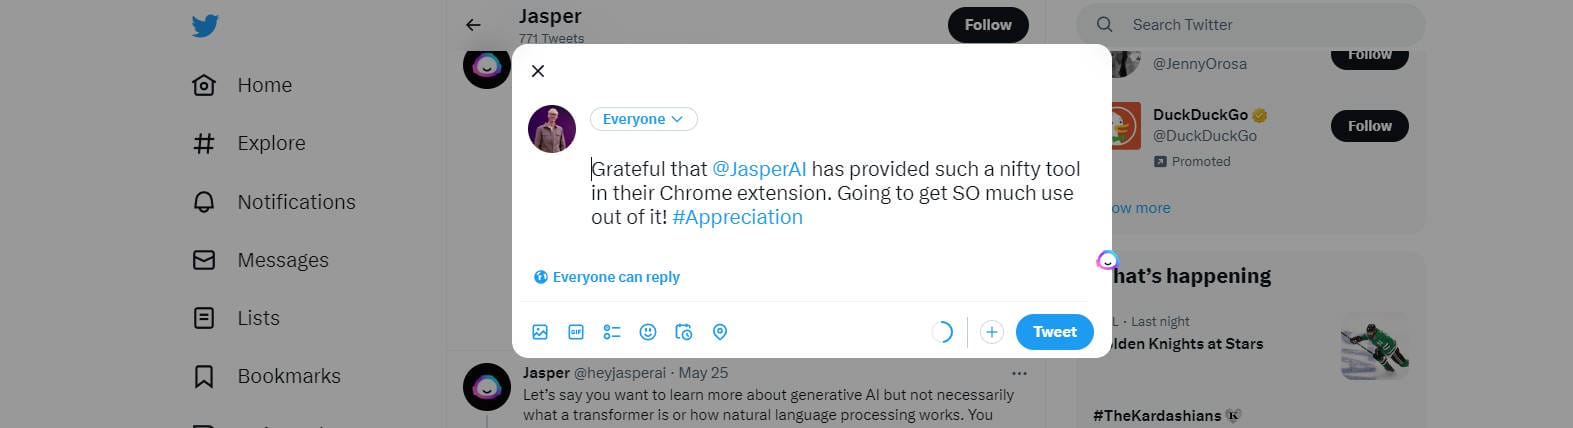 Jasper Chrome Extension - Result